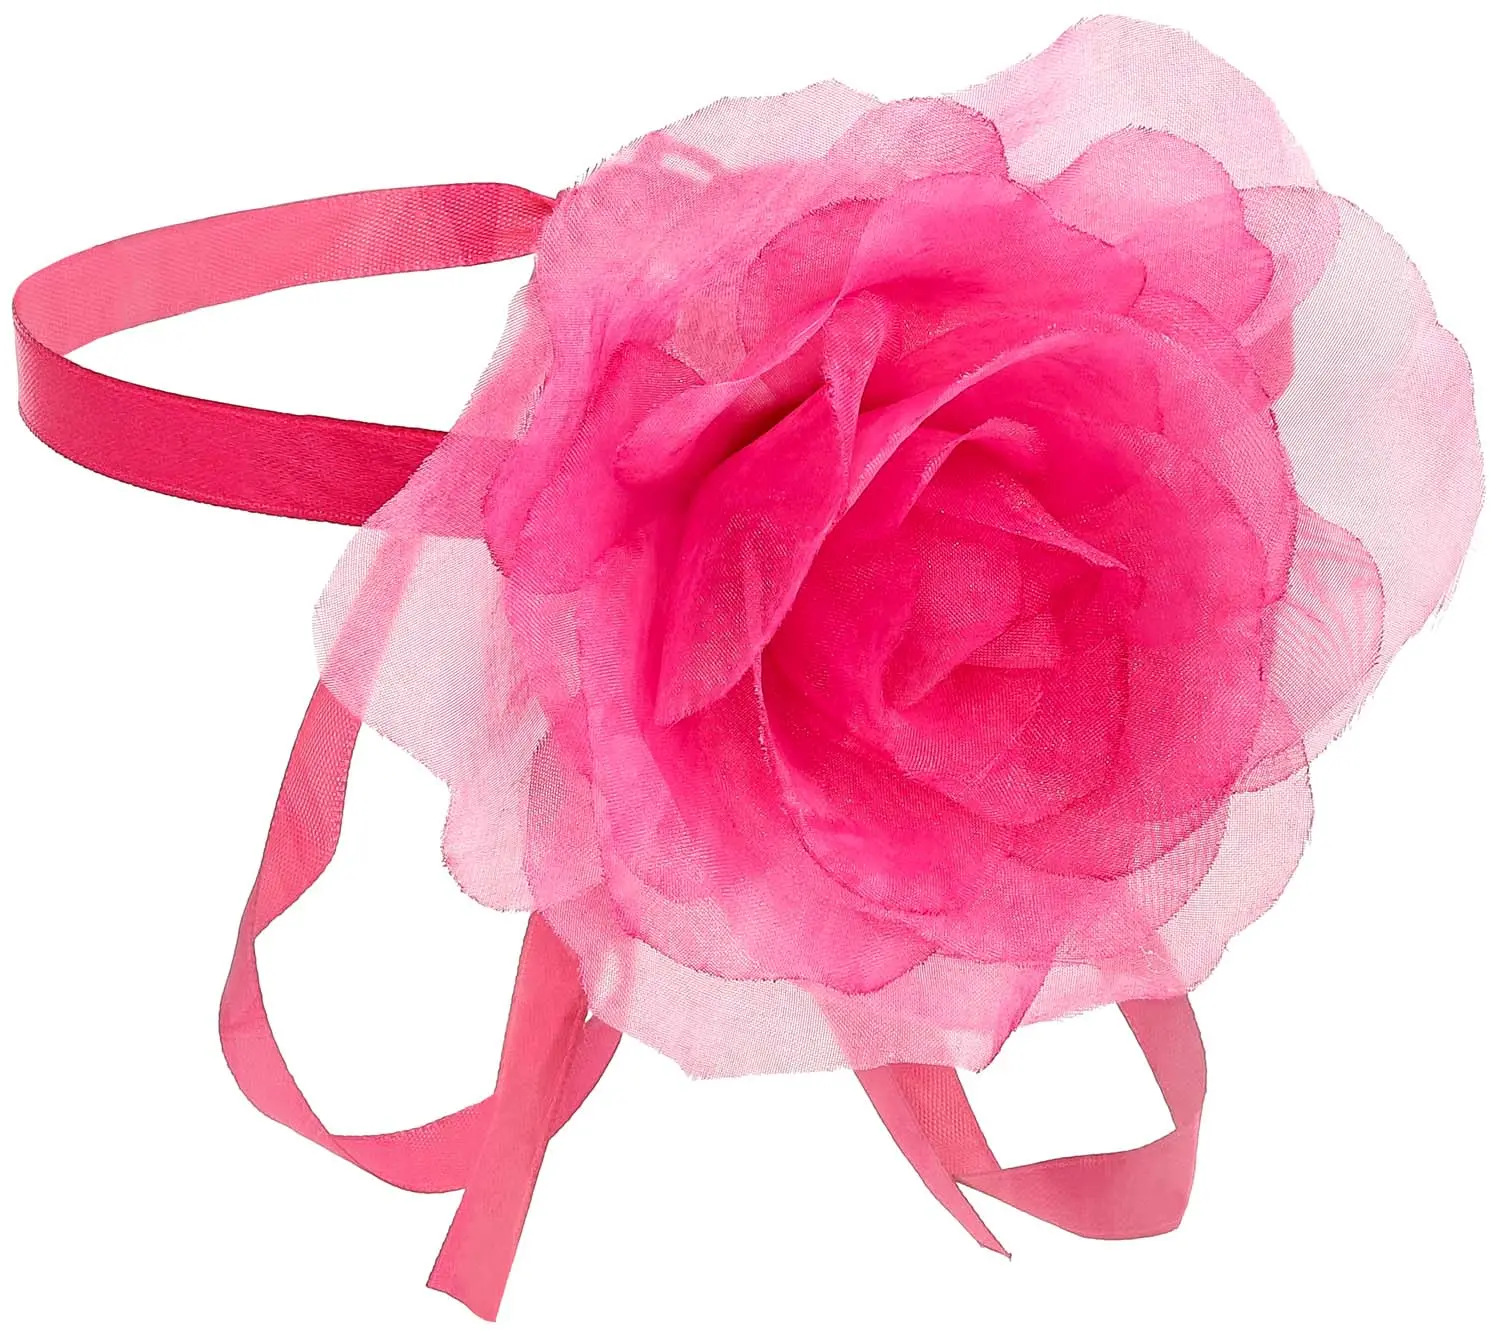 Bandeau - Pink Flower 